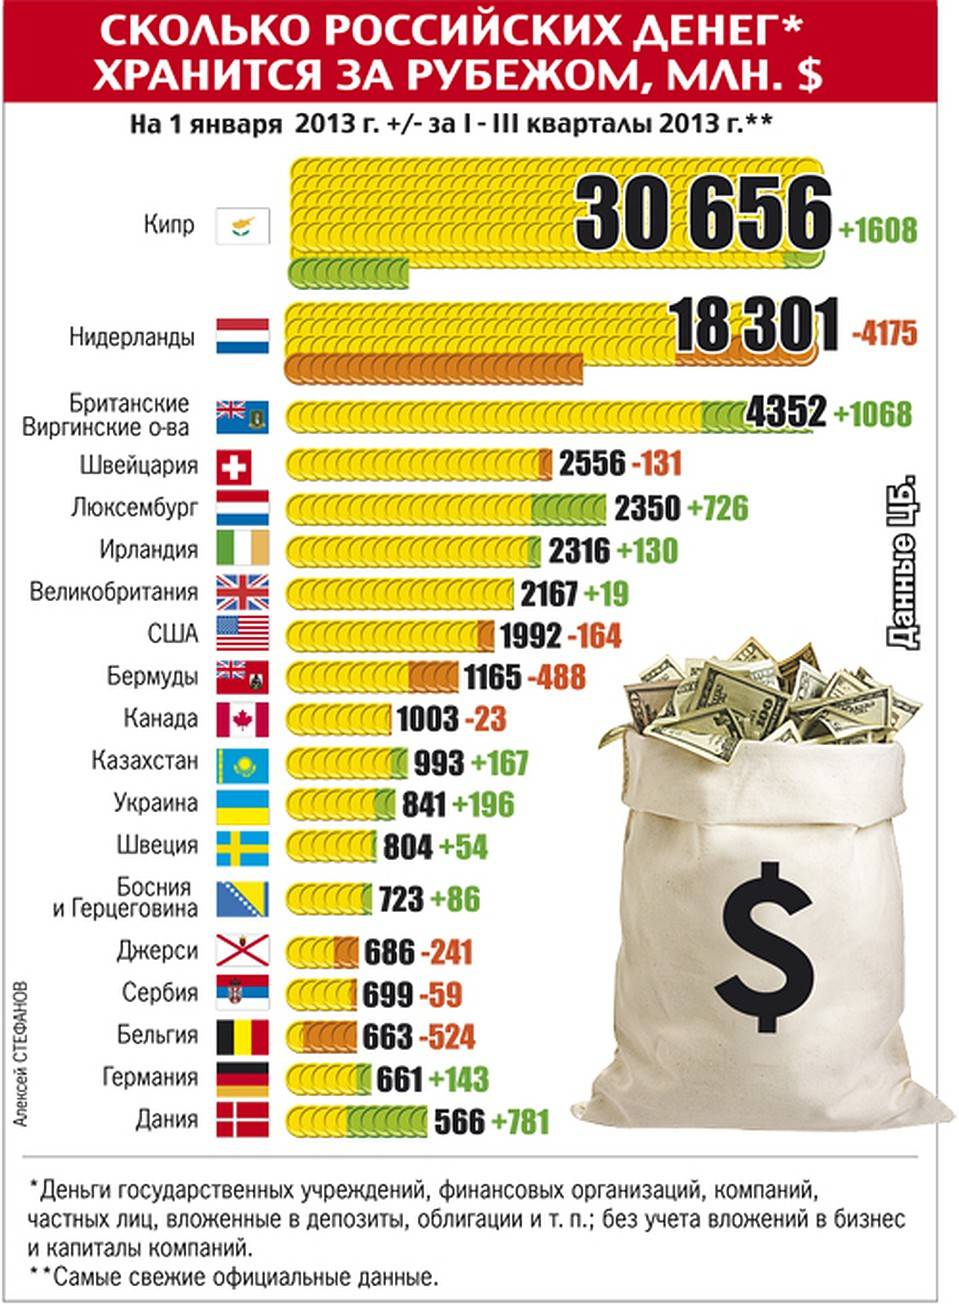 Количество долларов в россии. Сколько всего денег в мире. Сколькоьденег в России. Количество денег в странах. Сколько денег в России.